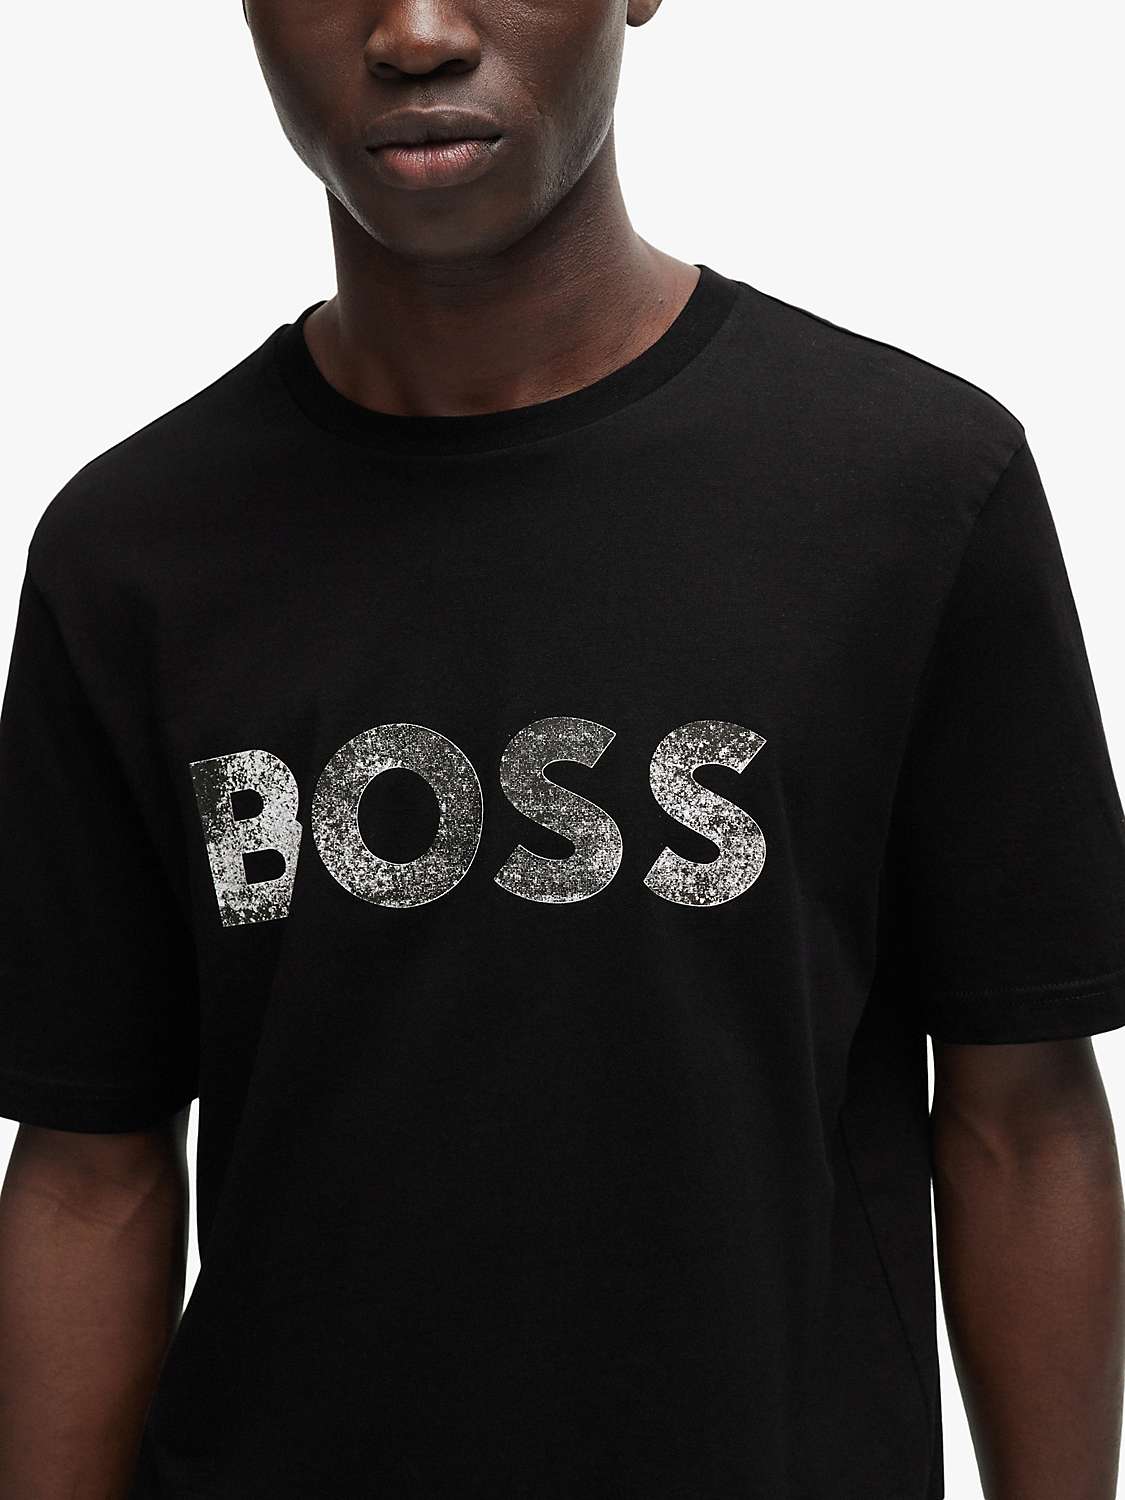 Buy BOSS Regular Fit Lightweight T-Shirt, Black Online at johnlewis.com